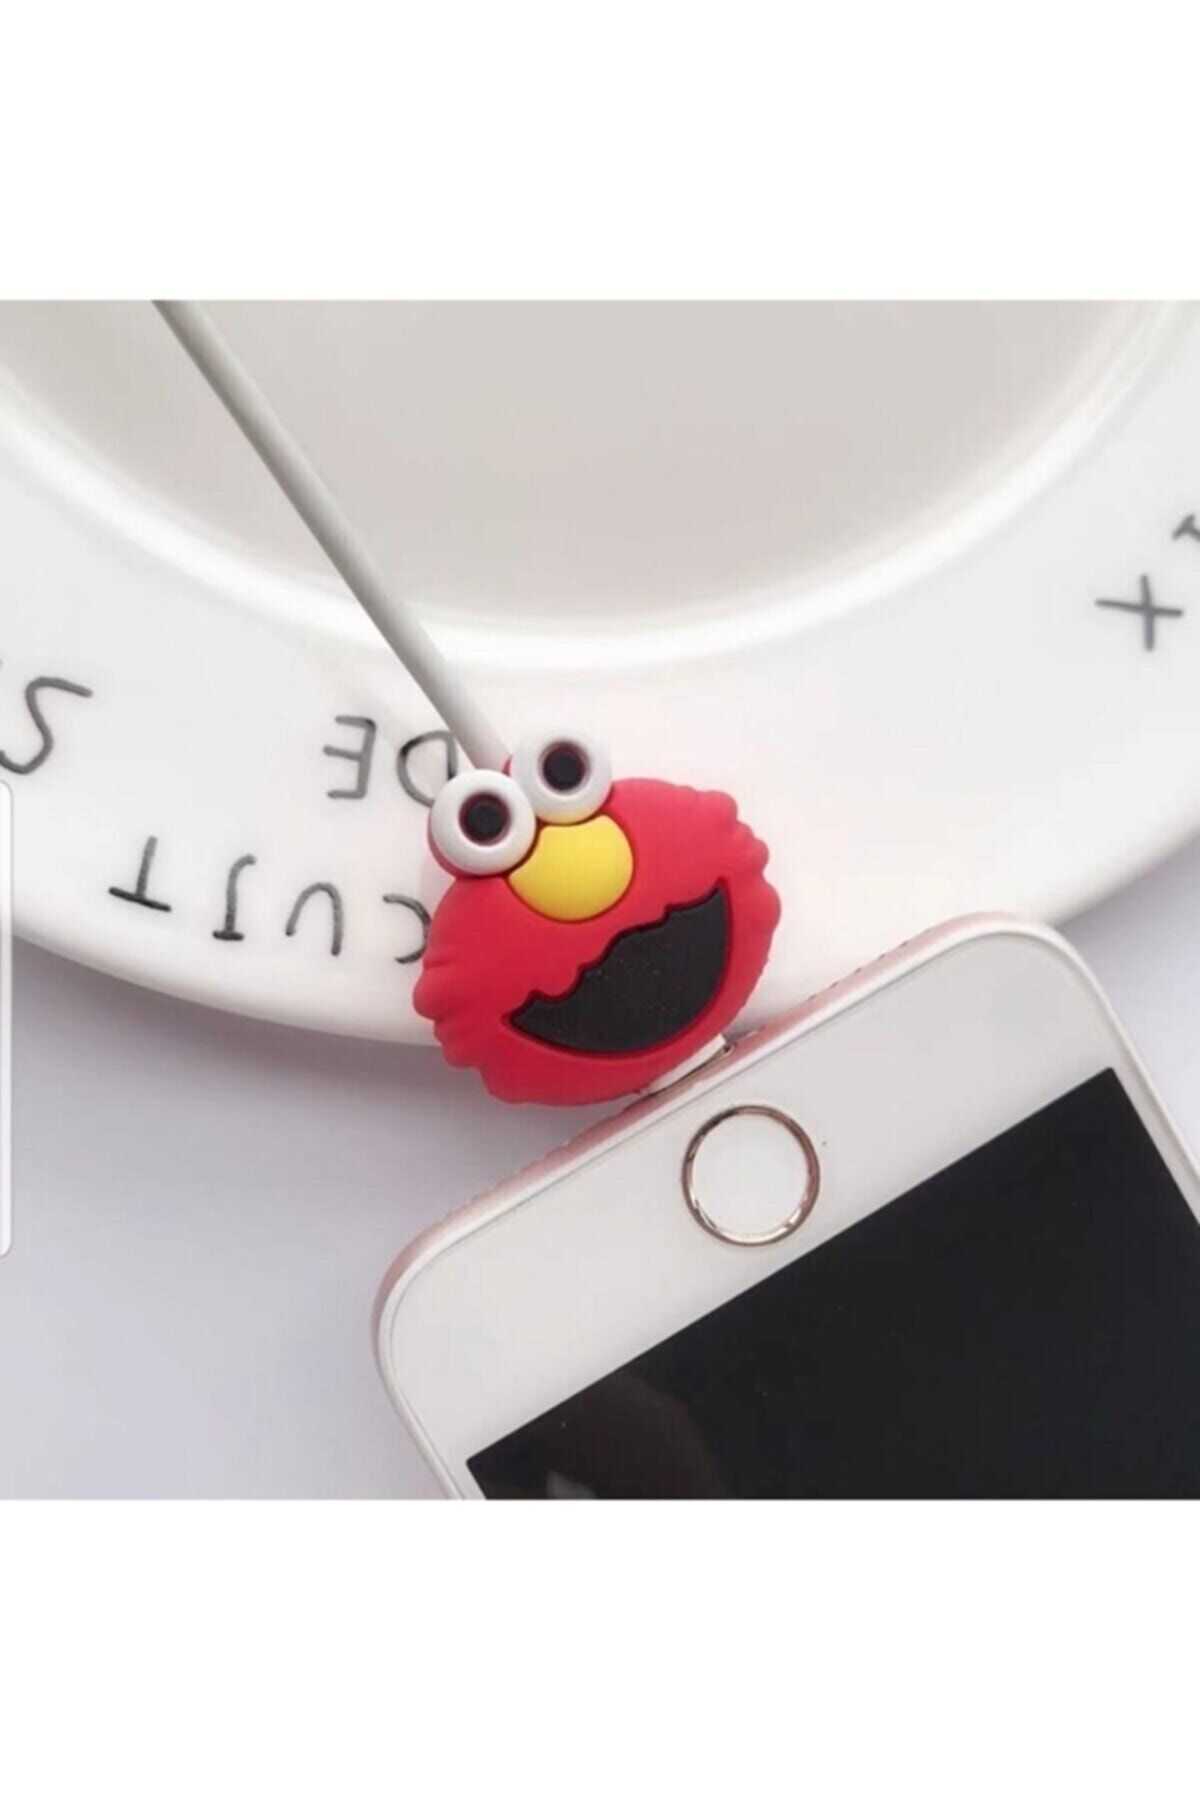 MY MÜRDÜM Sevimli Silikon Kablo Koruyucu Elmo